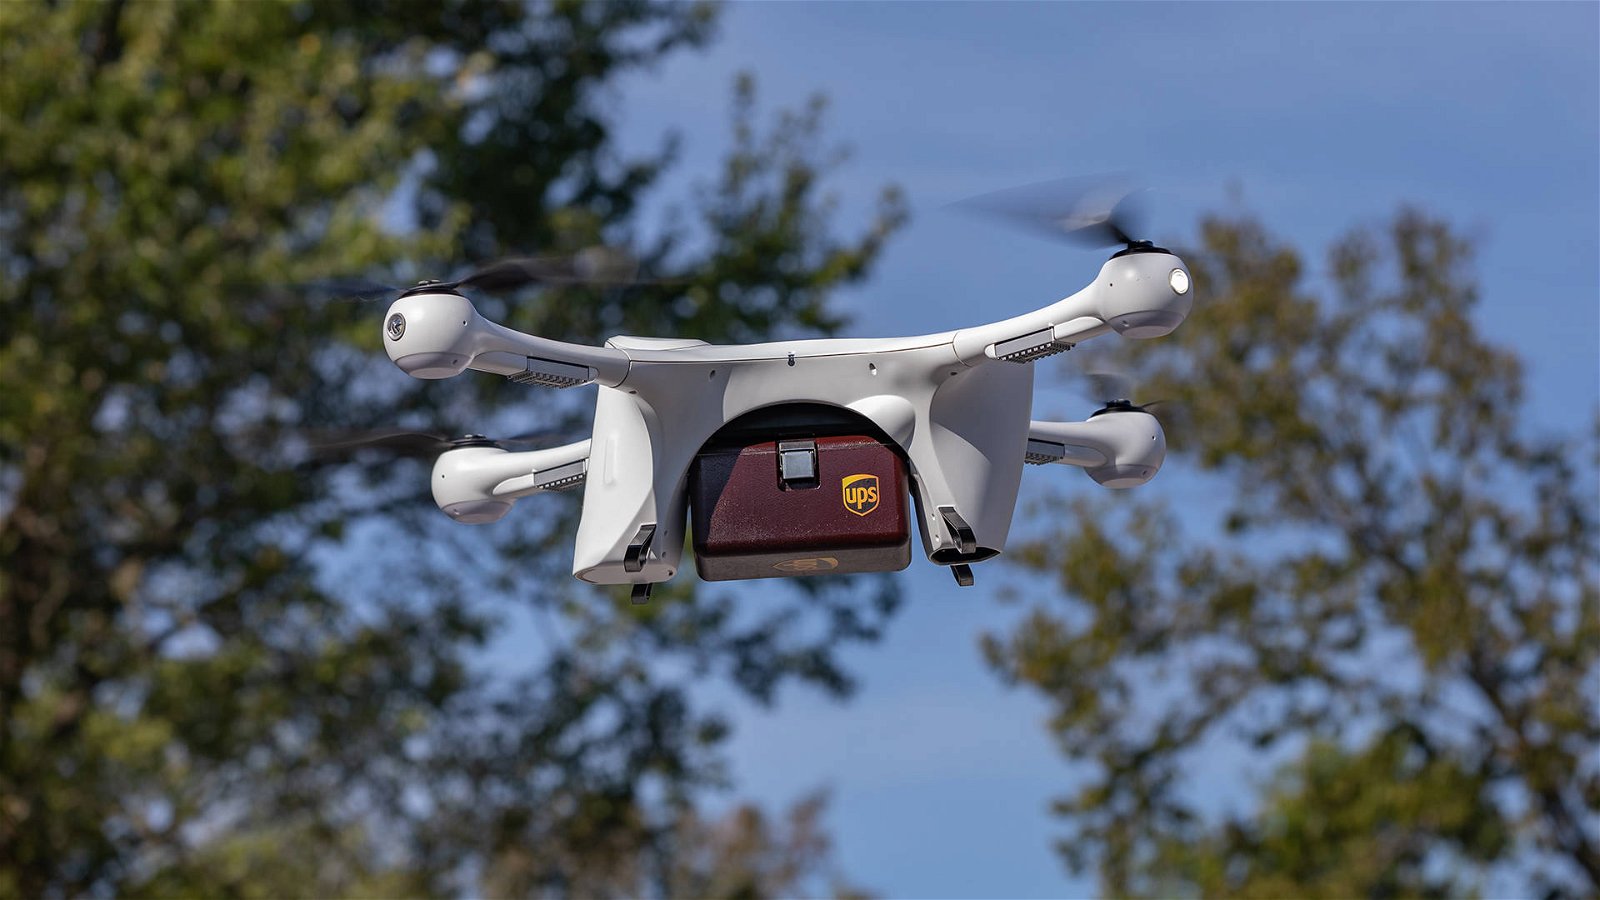 Immagine di UPS sfida Google Wing, anche i suoi droni consegneranno medicinali a domicilio